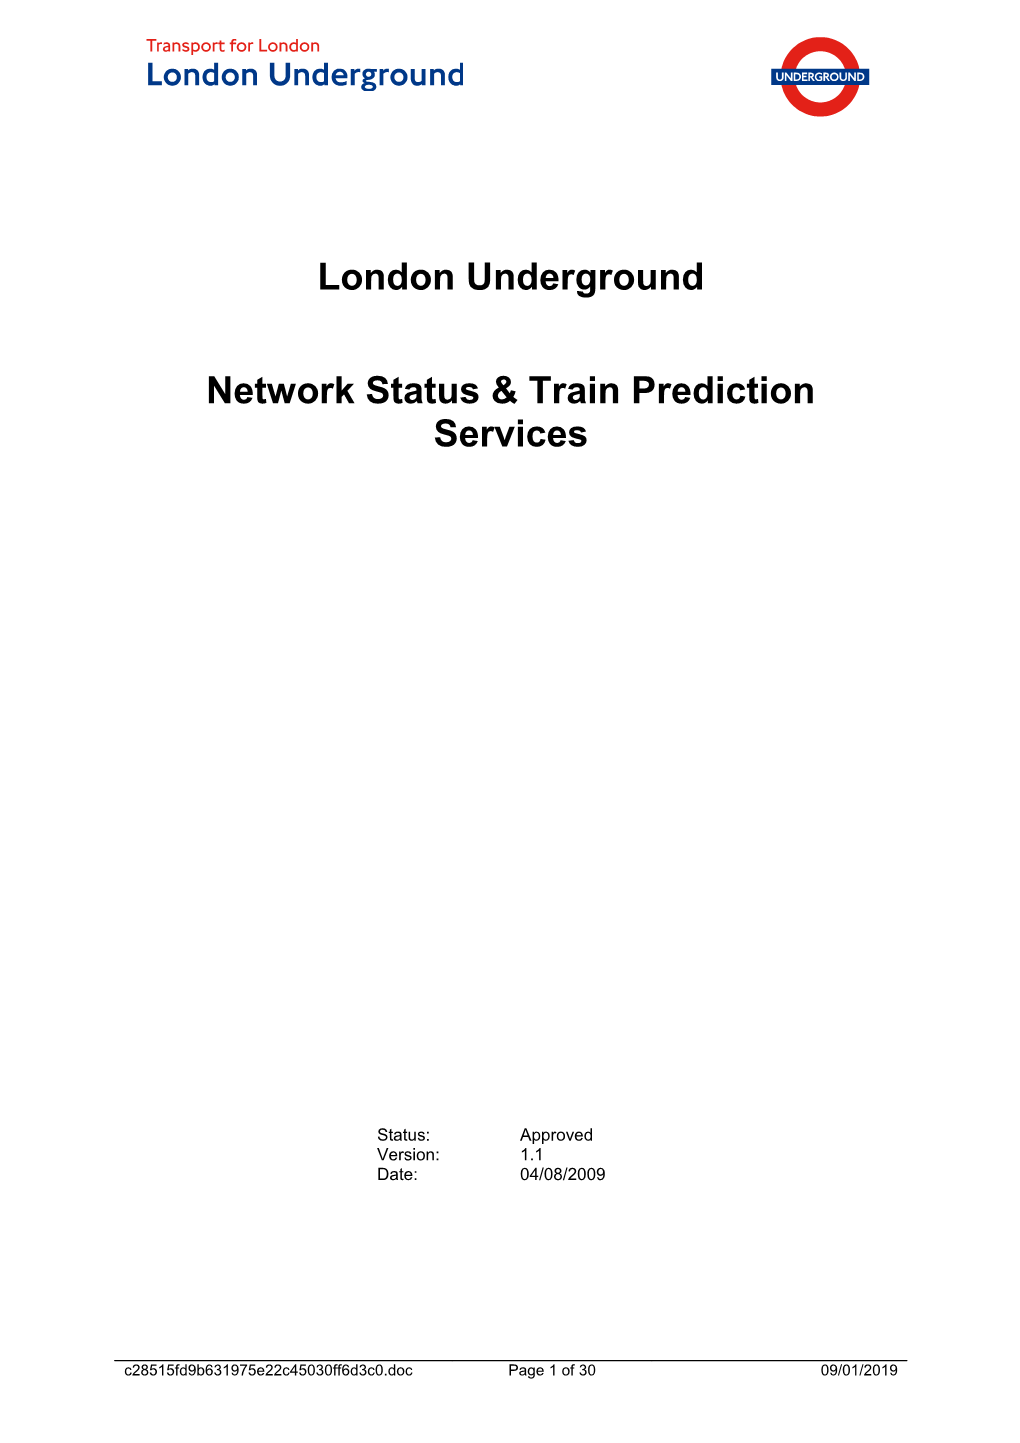 Network Status & Train Prediction Services